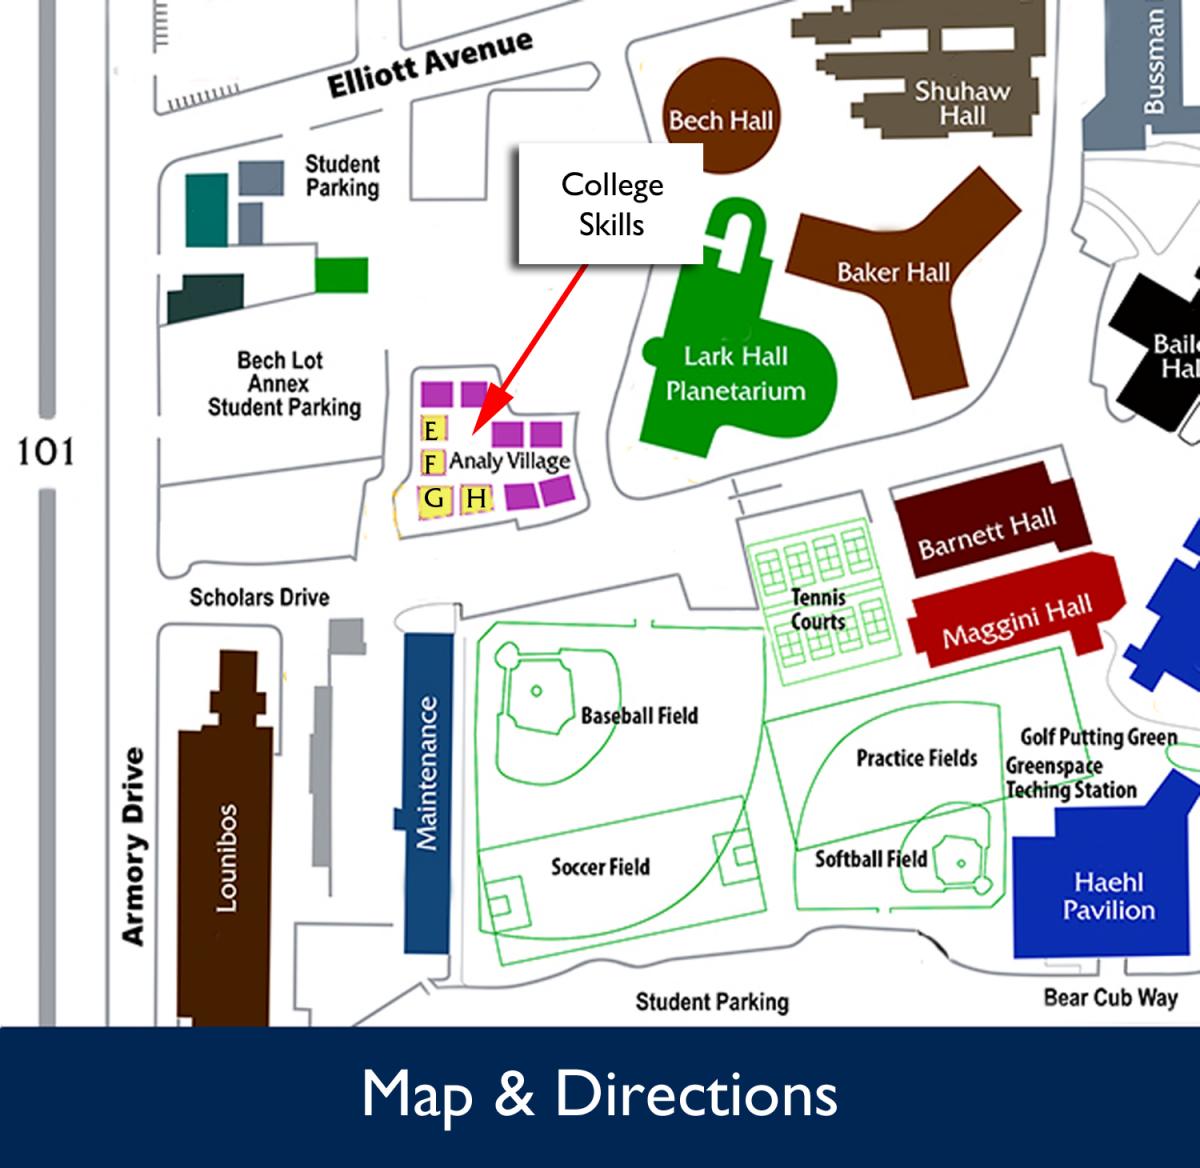 亚搏体育APP官网下载圣罗莎大学校园技能中心地图和方向